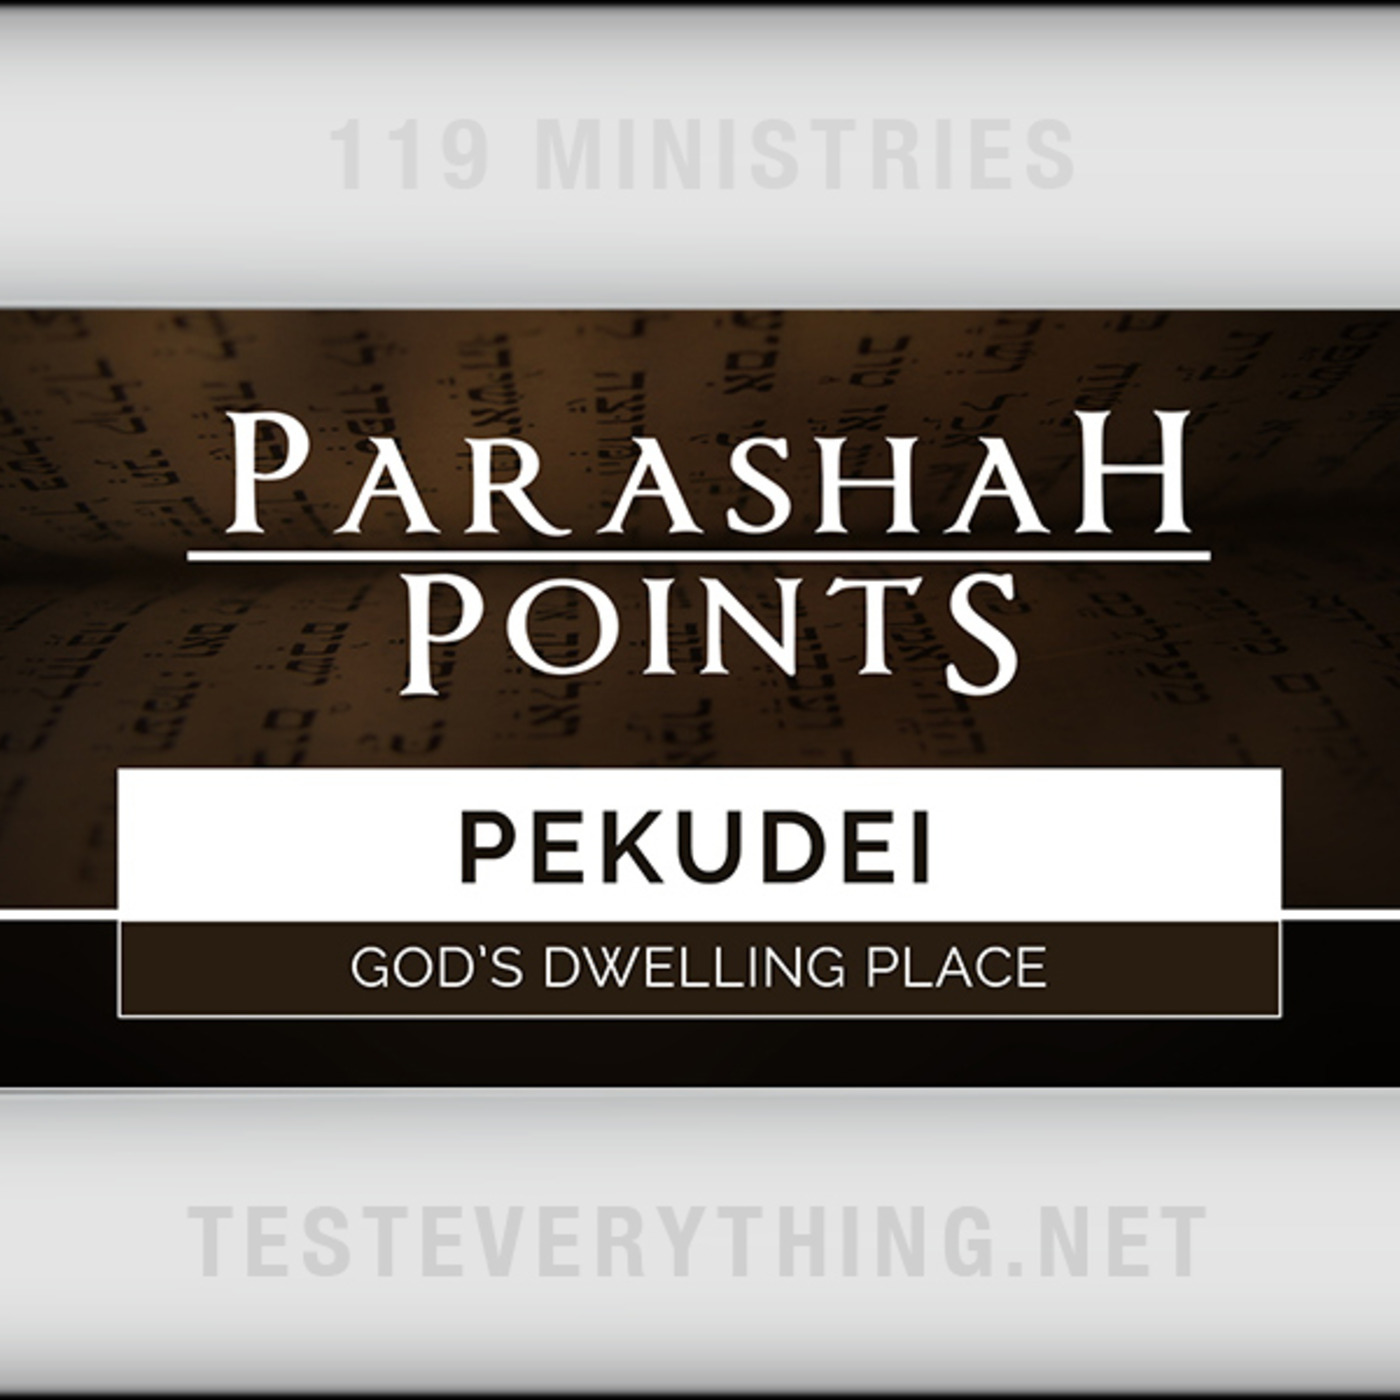 Parashah Points: Pekudei - God's Dwelling Place